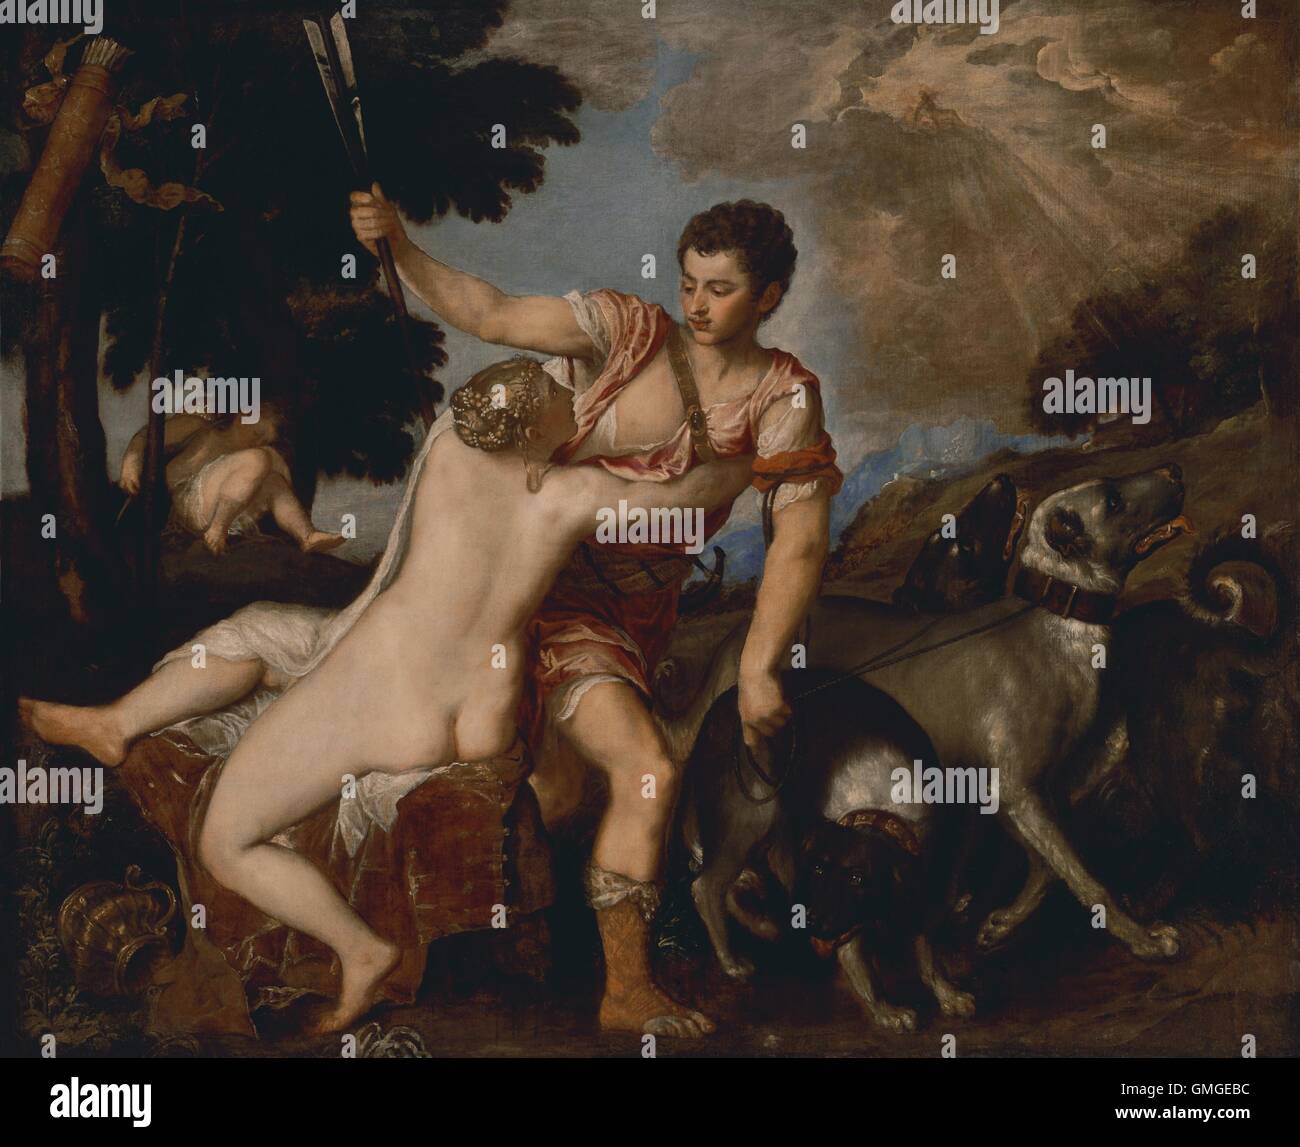 Venus und Adonis, von Tizian, c. 1555, italienischen Renaissance Malerei, Öl auf Leinwand. Die Göttin Venus versucht, ihren geliebten Adonis zurückhalten aus geht auf die Jagd. Szene basiert auf alten römischen Dichters Ovids "Metamorphosen", in dem die sterblichen Adonis Fatall (BSLOC 2016 6 1 ist) Stockfoto